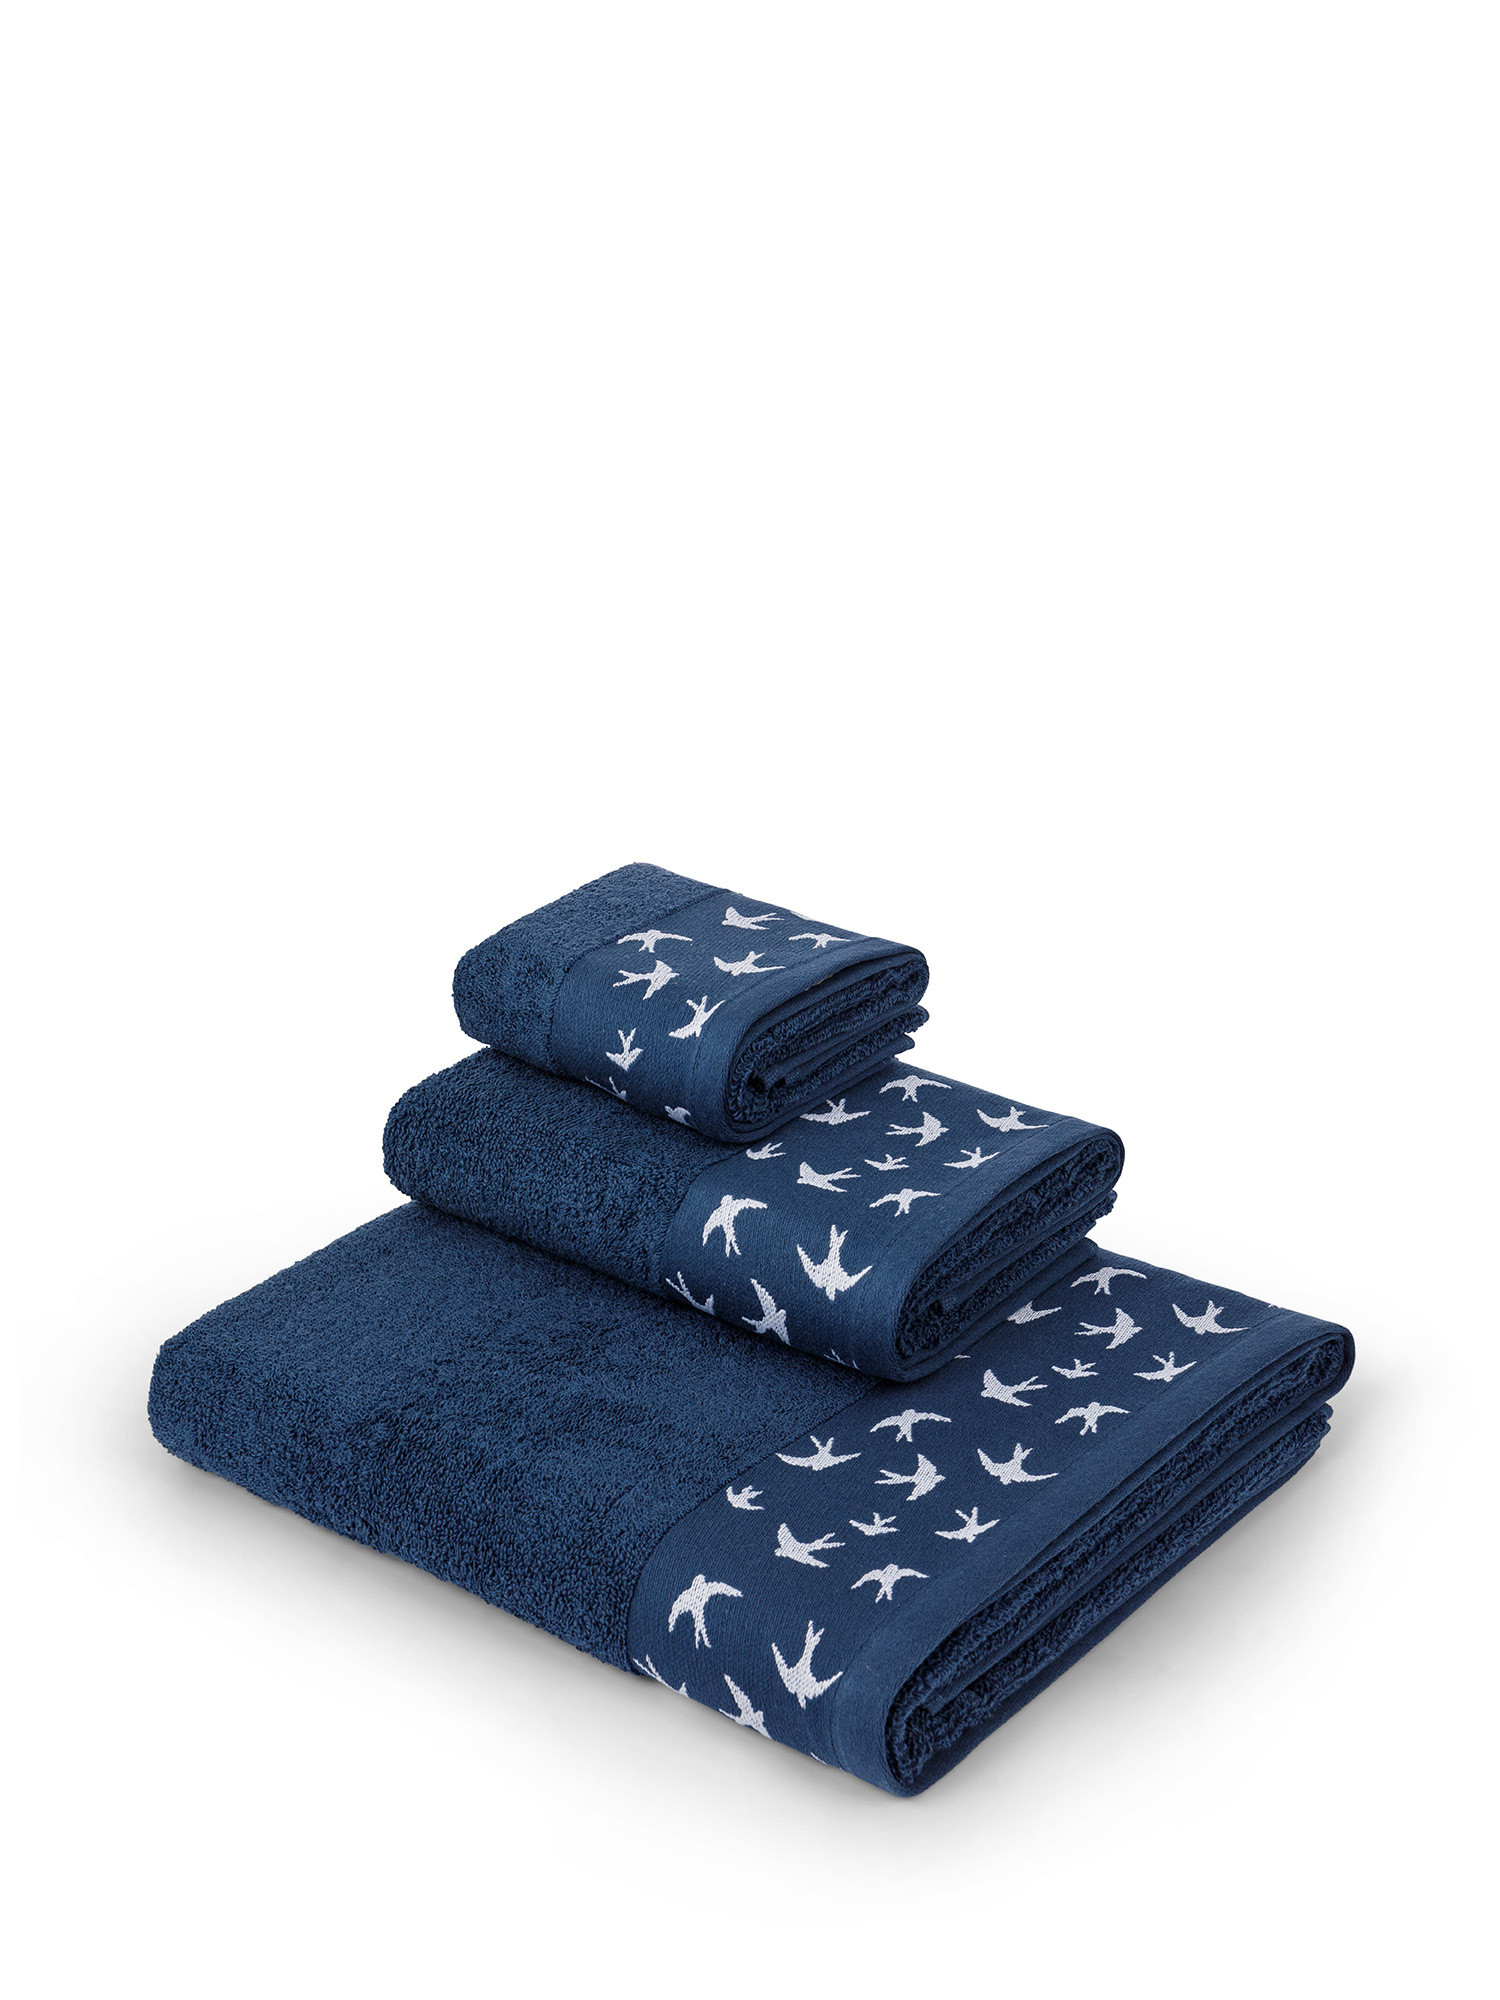 Asciugamano in spugna di puro cotone con ricamo rondini, Blu, large image number 0